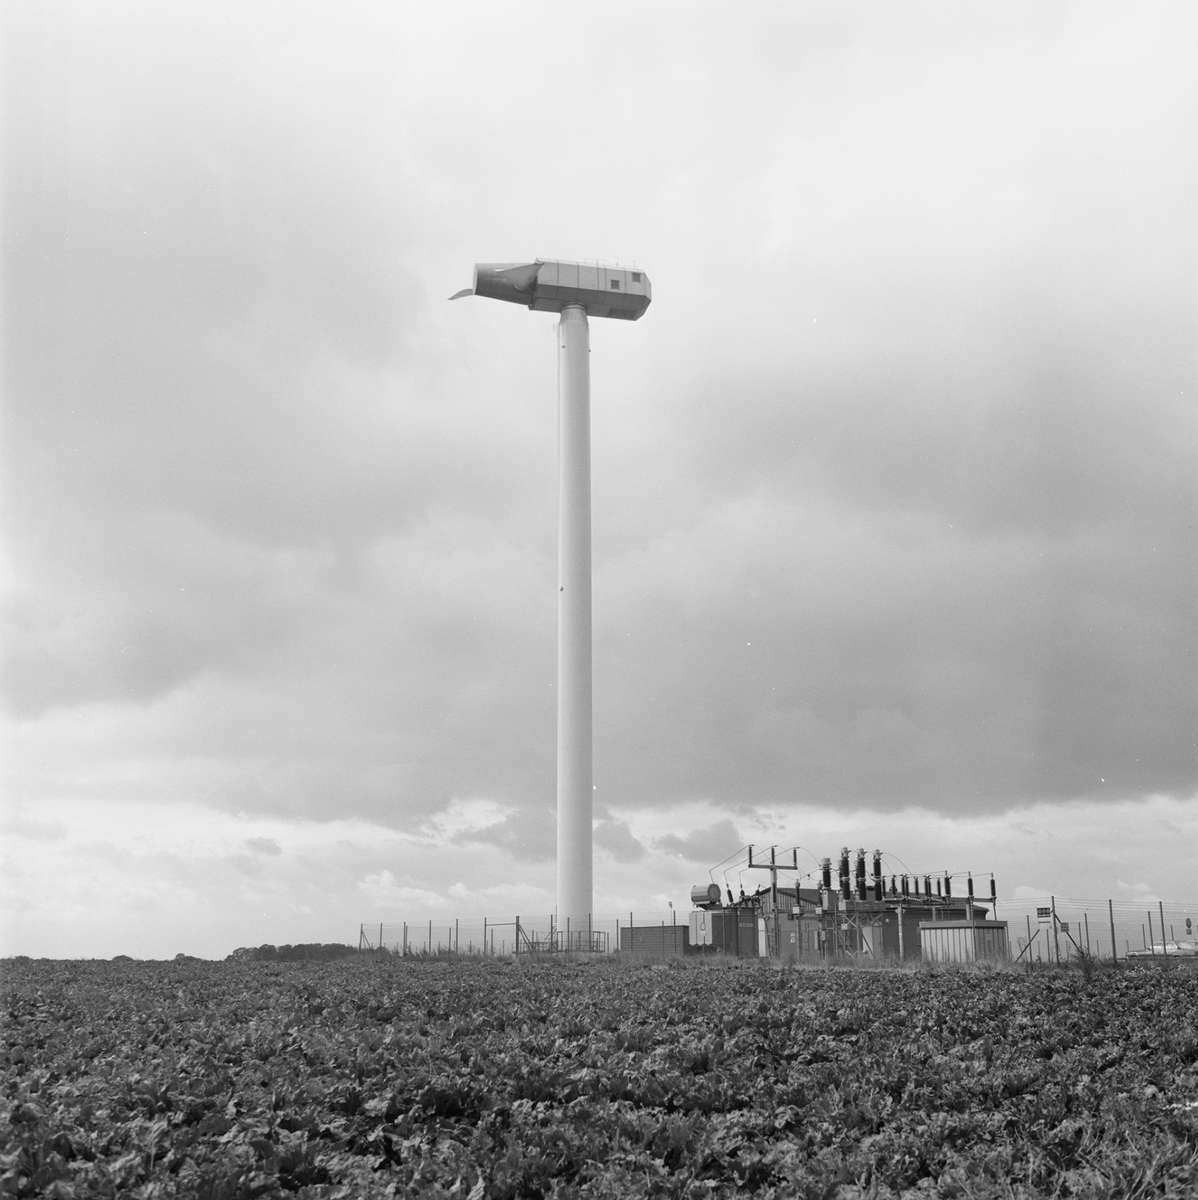 Övrigt: Foto datum: 22/9 1983
Byggnader och kranar
Exteriör av vindkraftverket i Maglarp